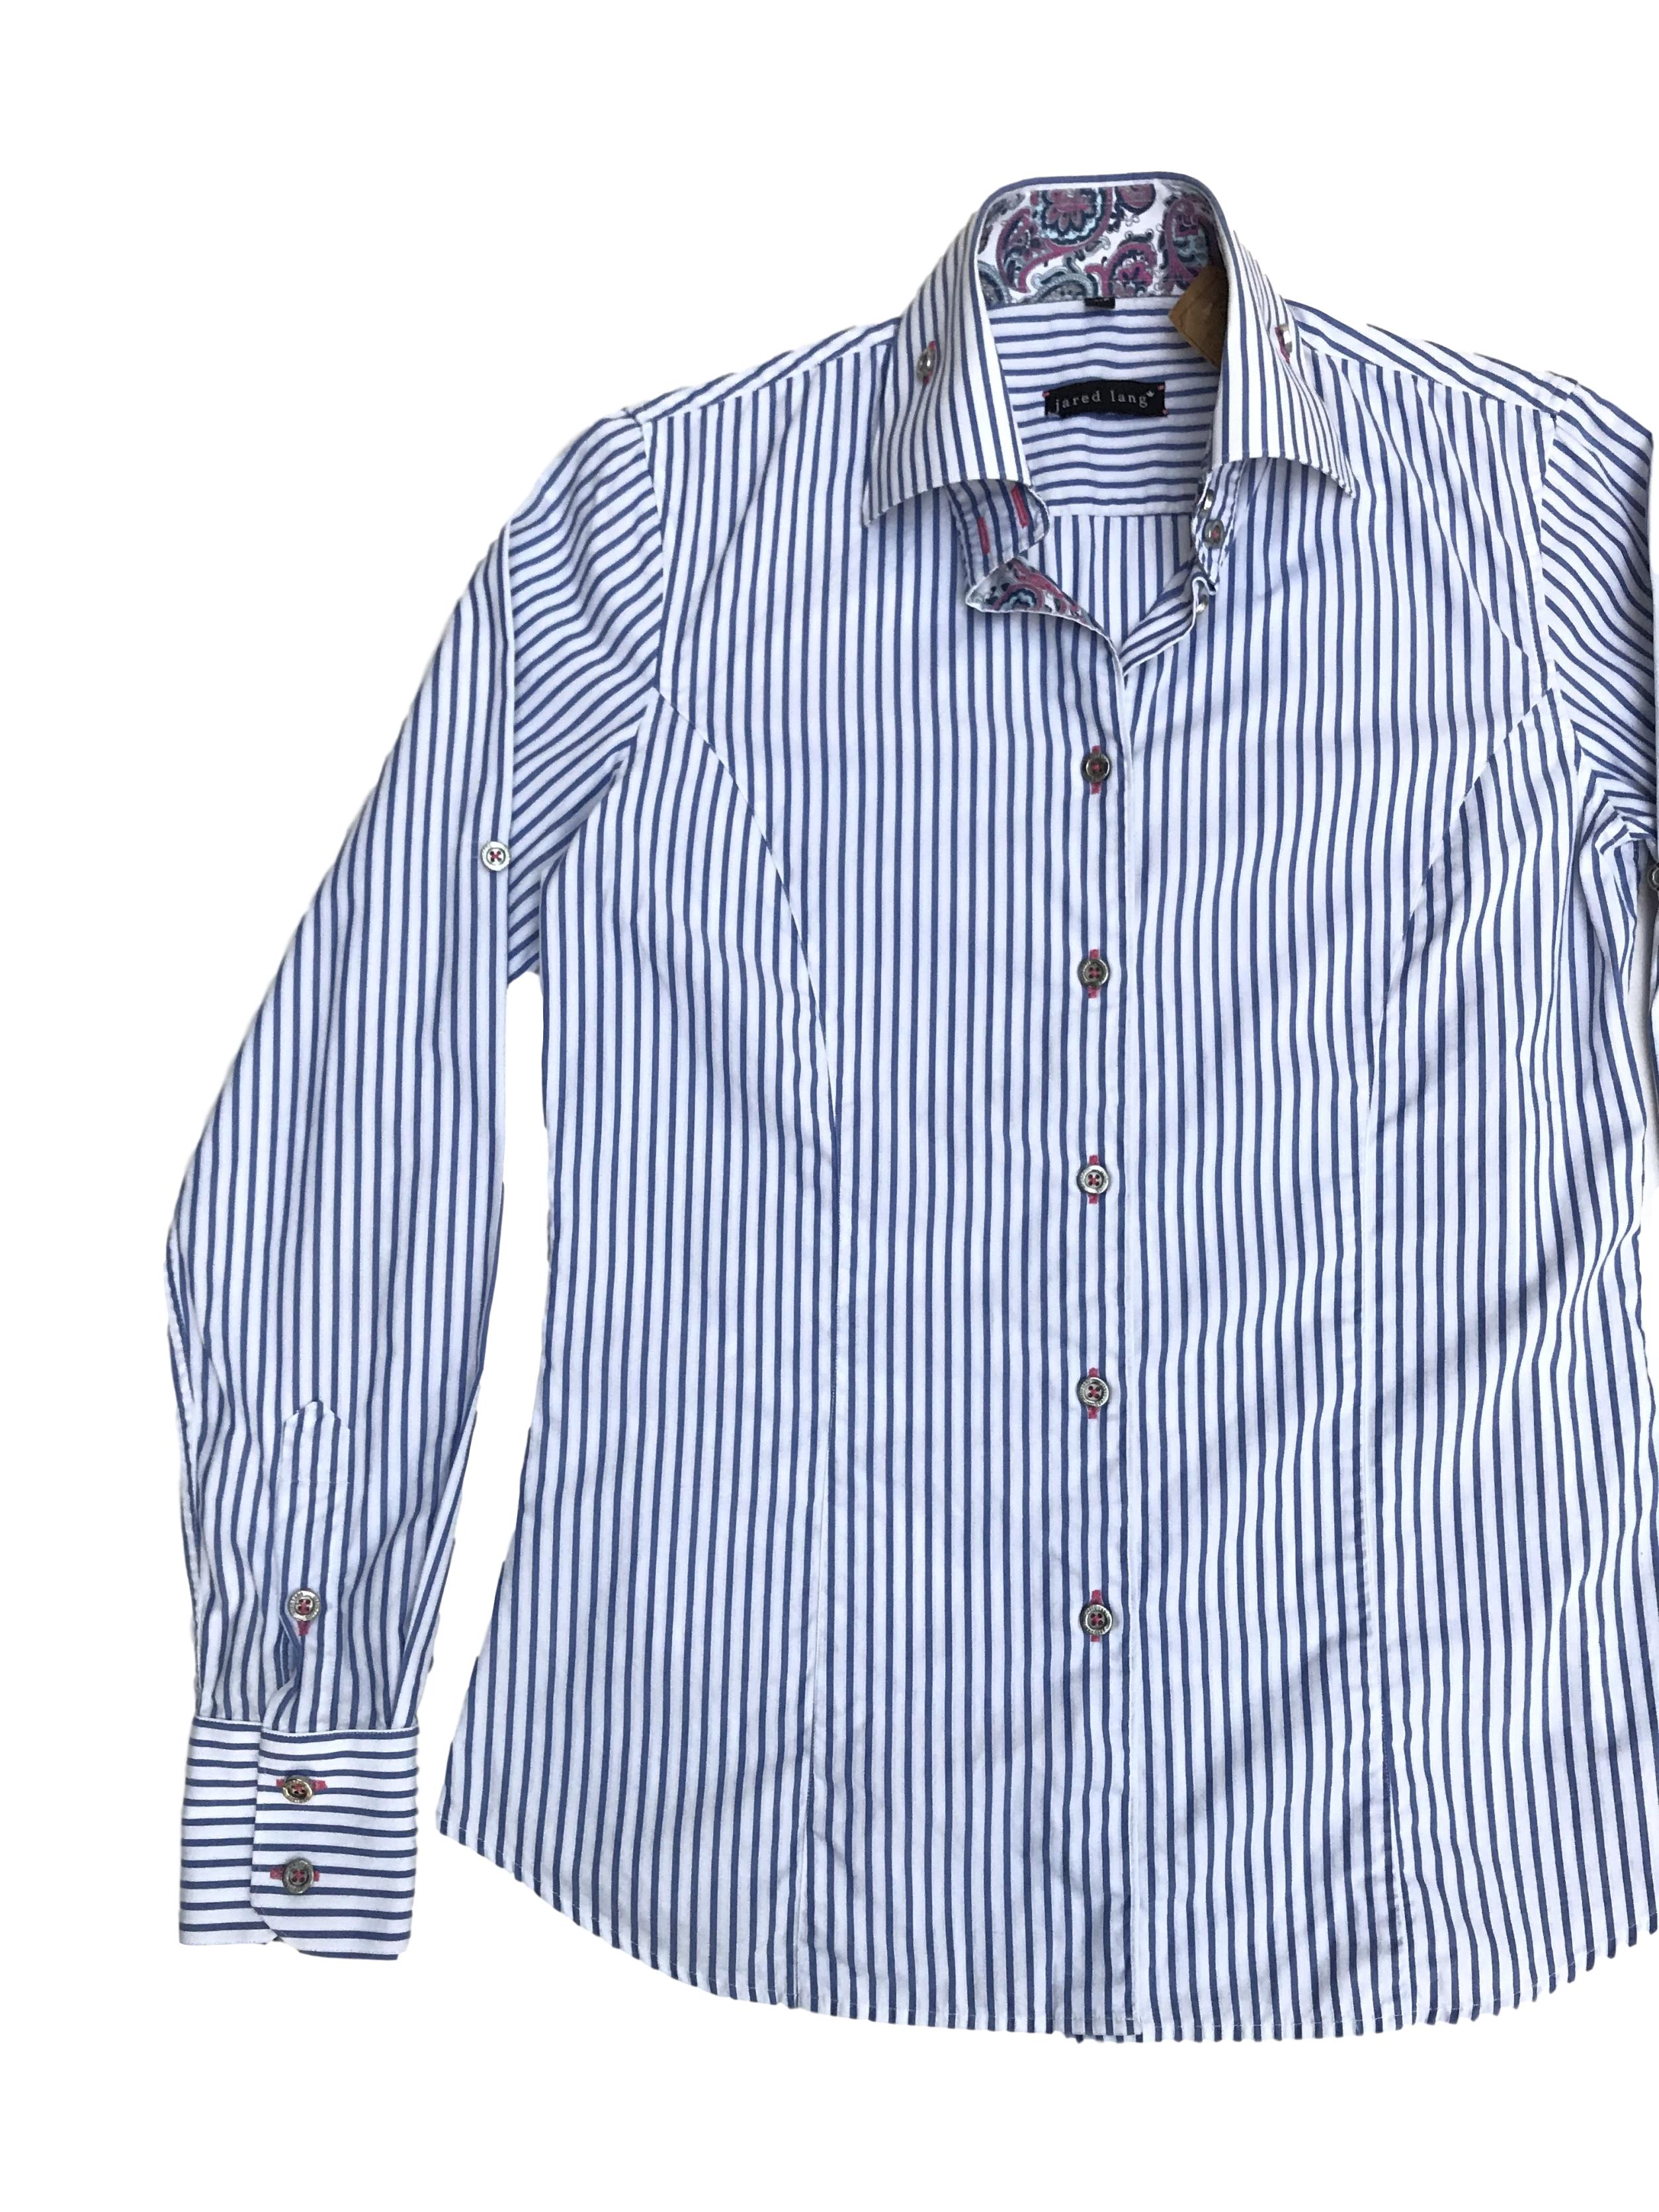 Blusa Jared Lang 100% algodón blanca con rayas celestes, botones plateados y detalle de tela paisley en puños y cuello. La que todas necesitamos en el closet con detalles especiales. Precio original S/ 200